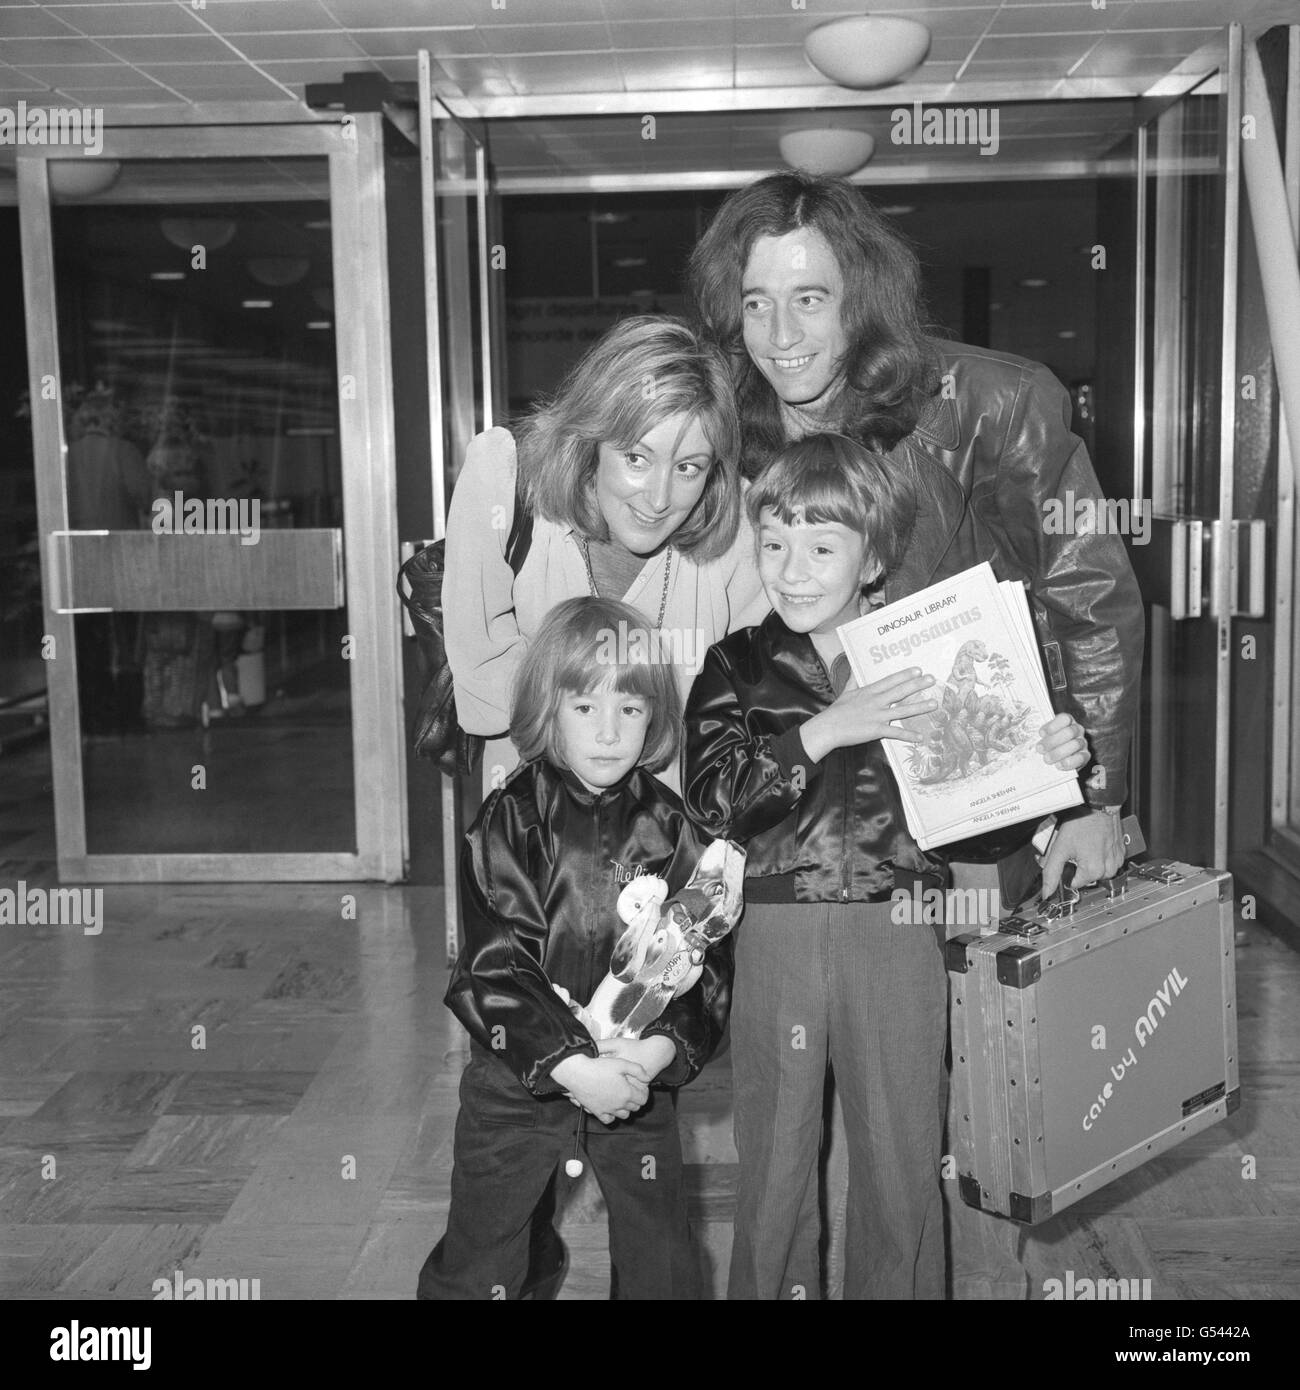 Robin Gibb du groupe pop Bee Gees, sa femme Molly et ses enfants, Melissa, cinq ans, et Spencer, sept ans, à l'aéroport de Londres Heathrow avant de prendre l'avion pour Concorde aux États-Unis. Banque D'Images